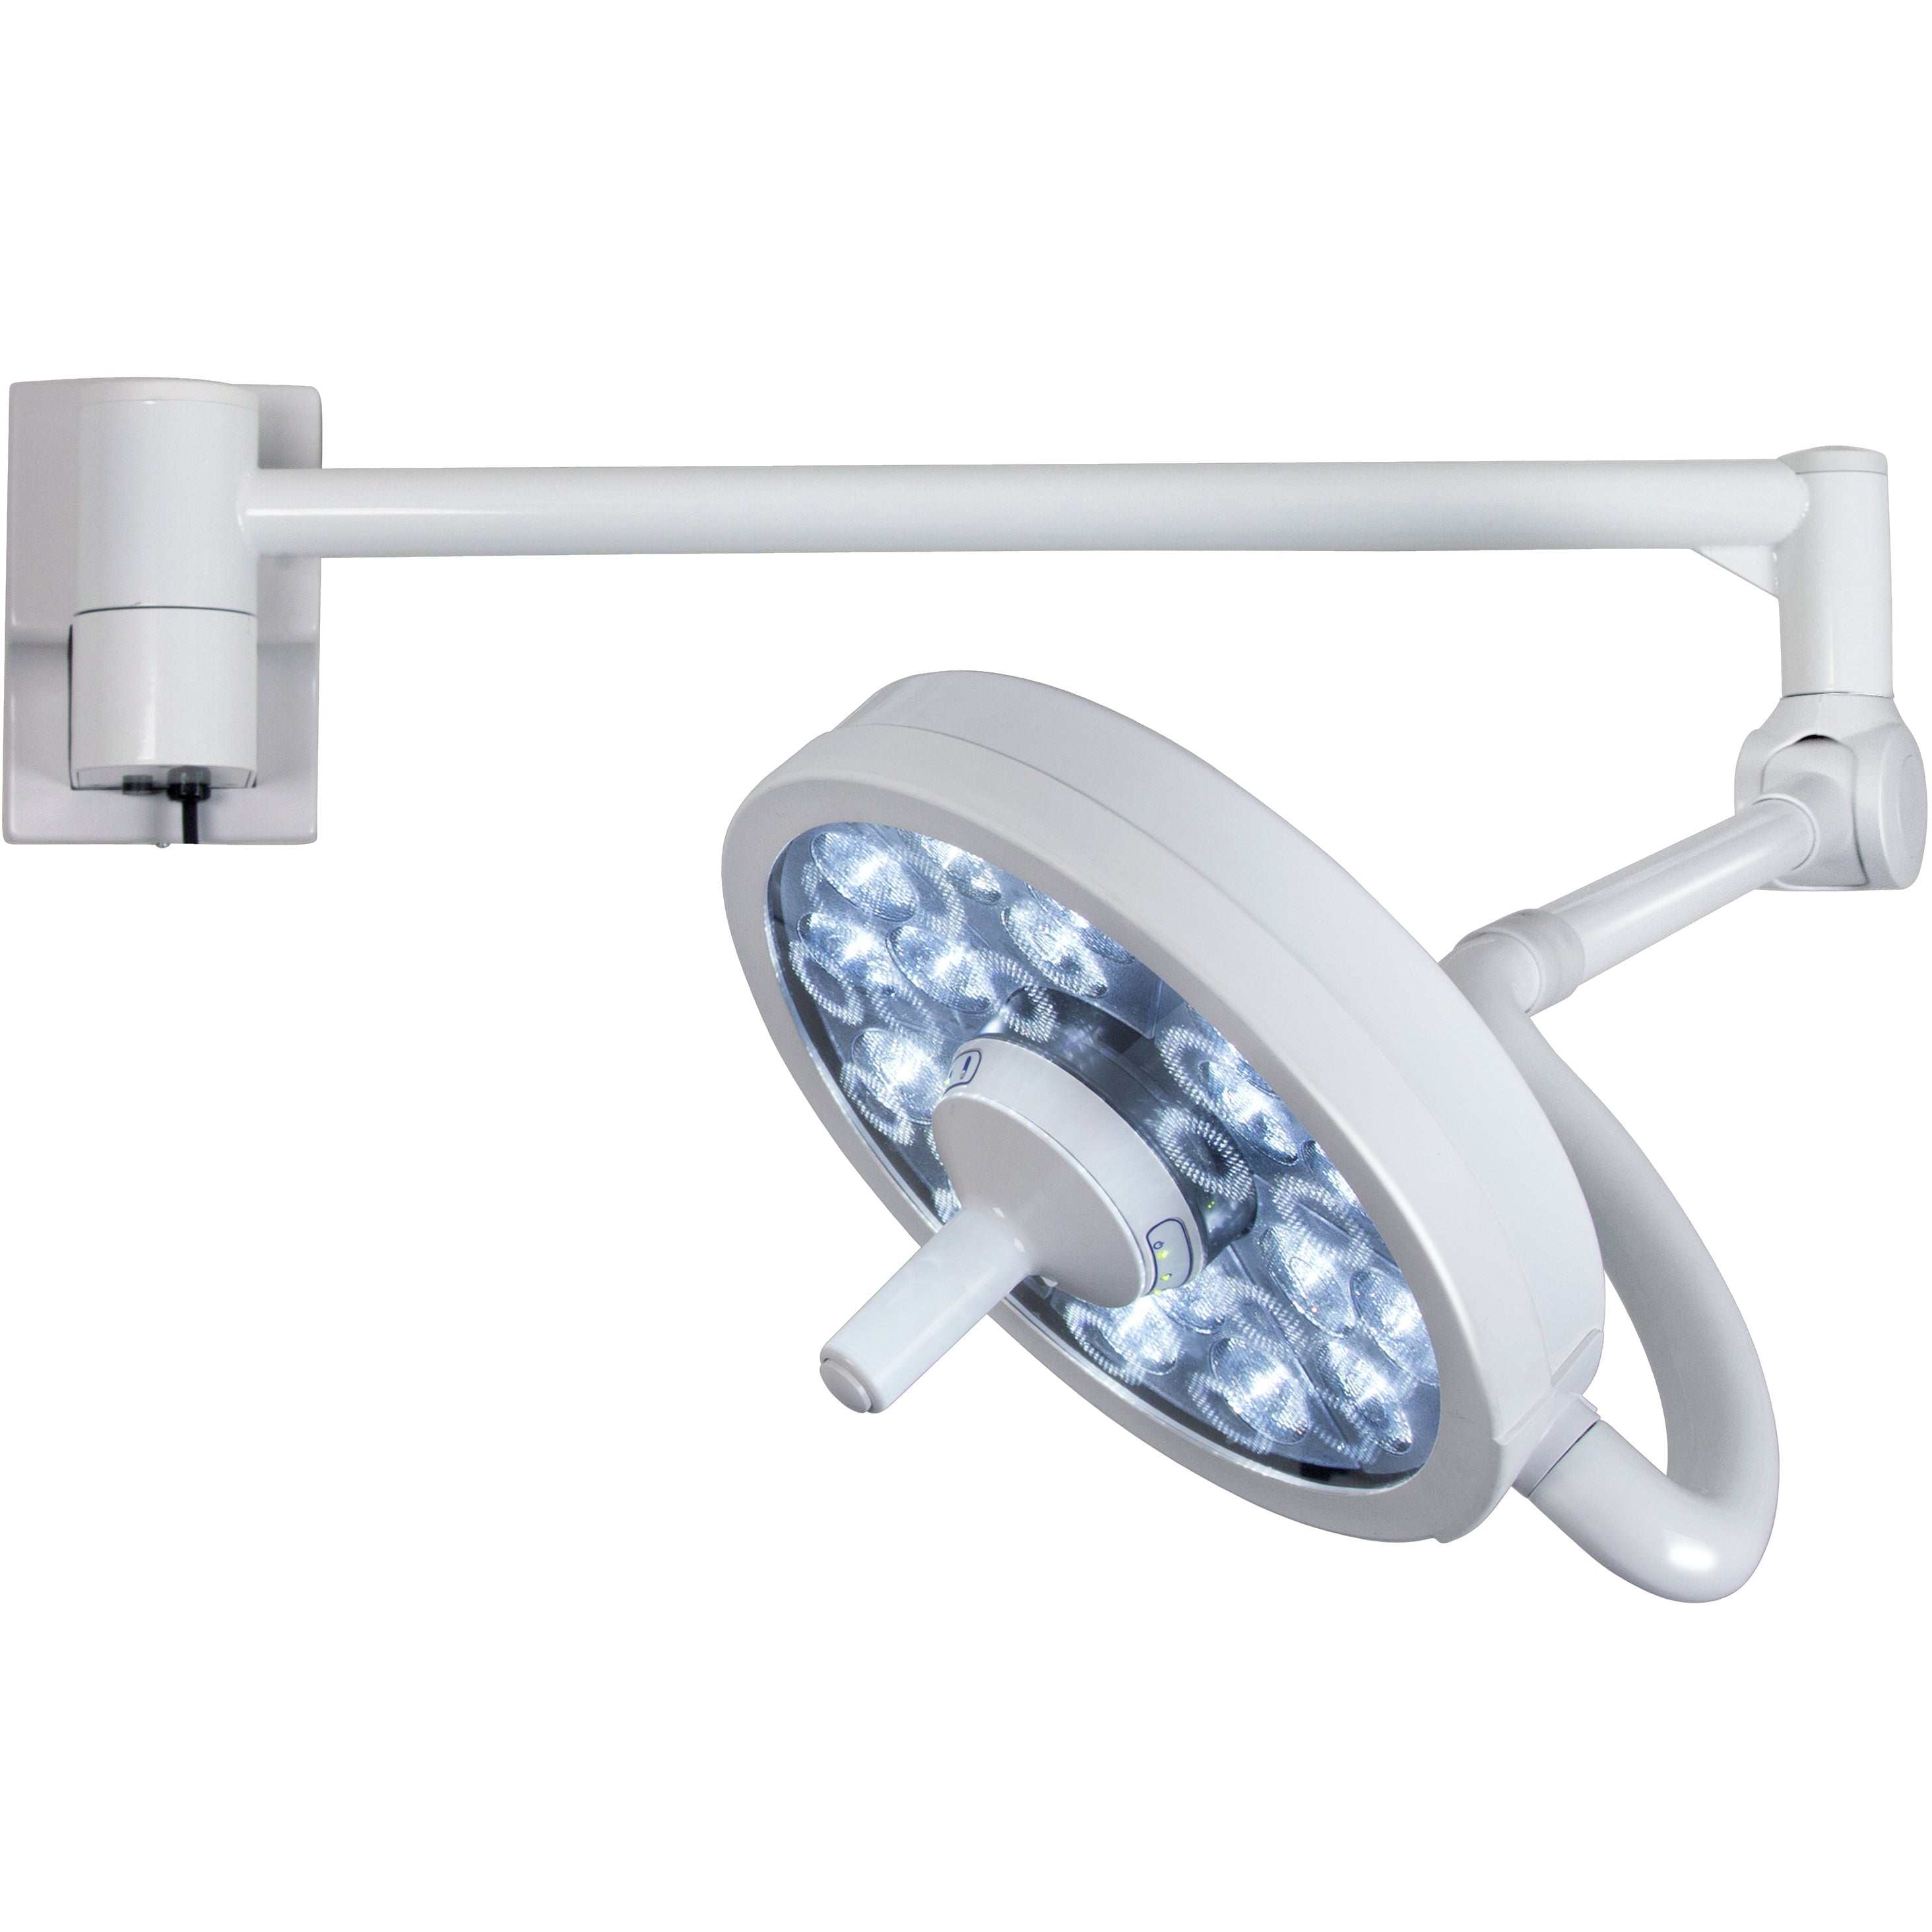 Bovie MI-750 LED Procedure Light - Wall Mount (061422)